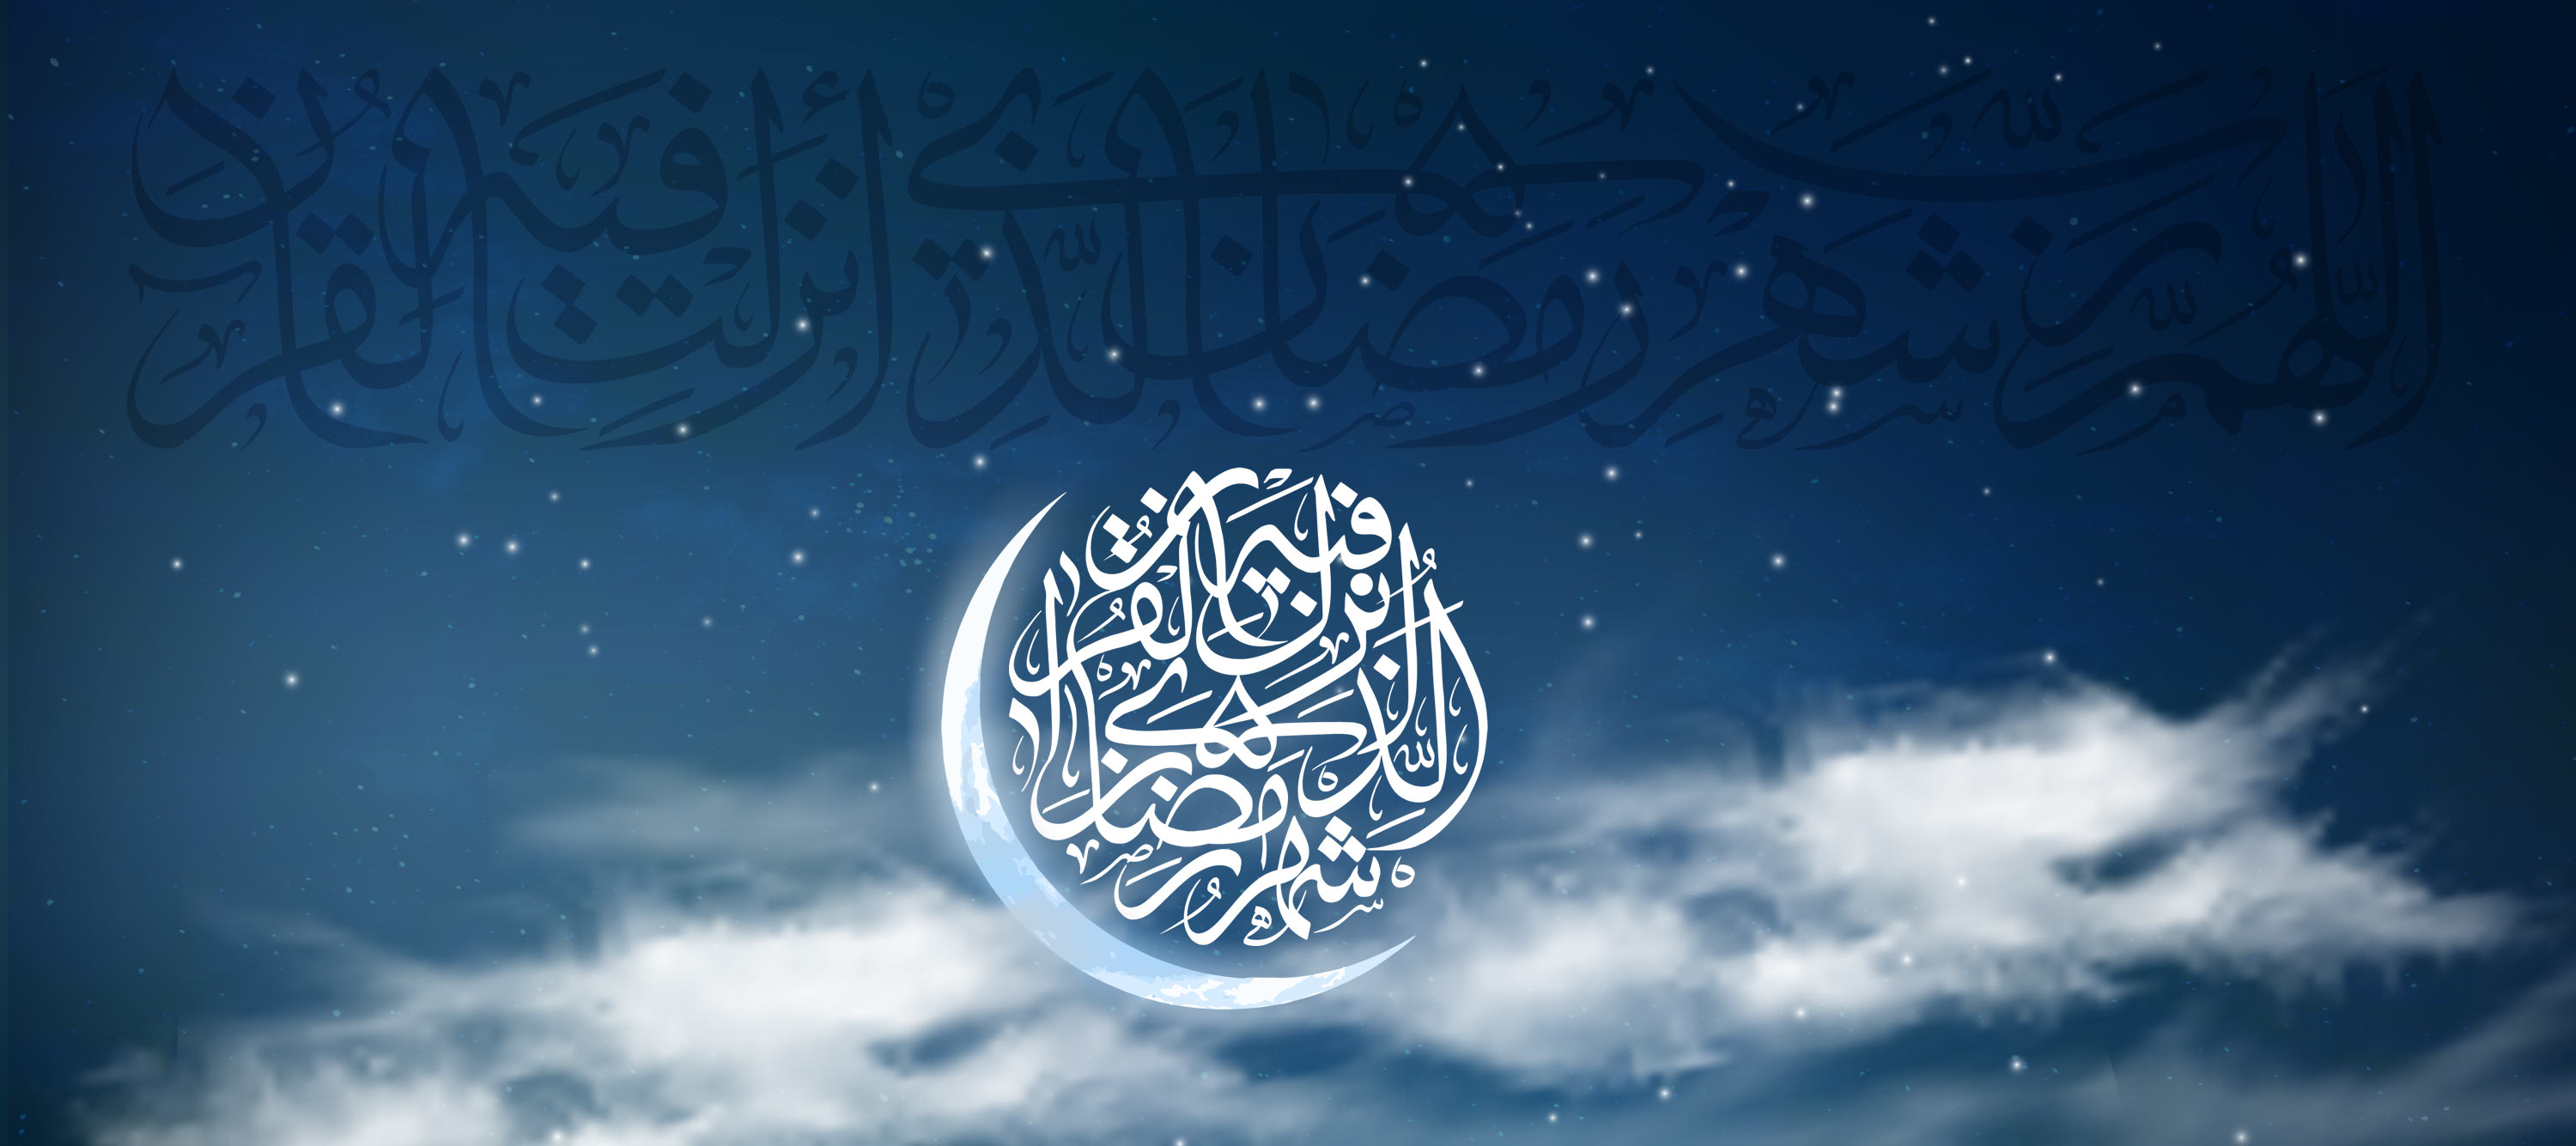 حلول ماه مبارک رمضان برتمامی مسلمانان جهان مبارک باد